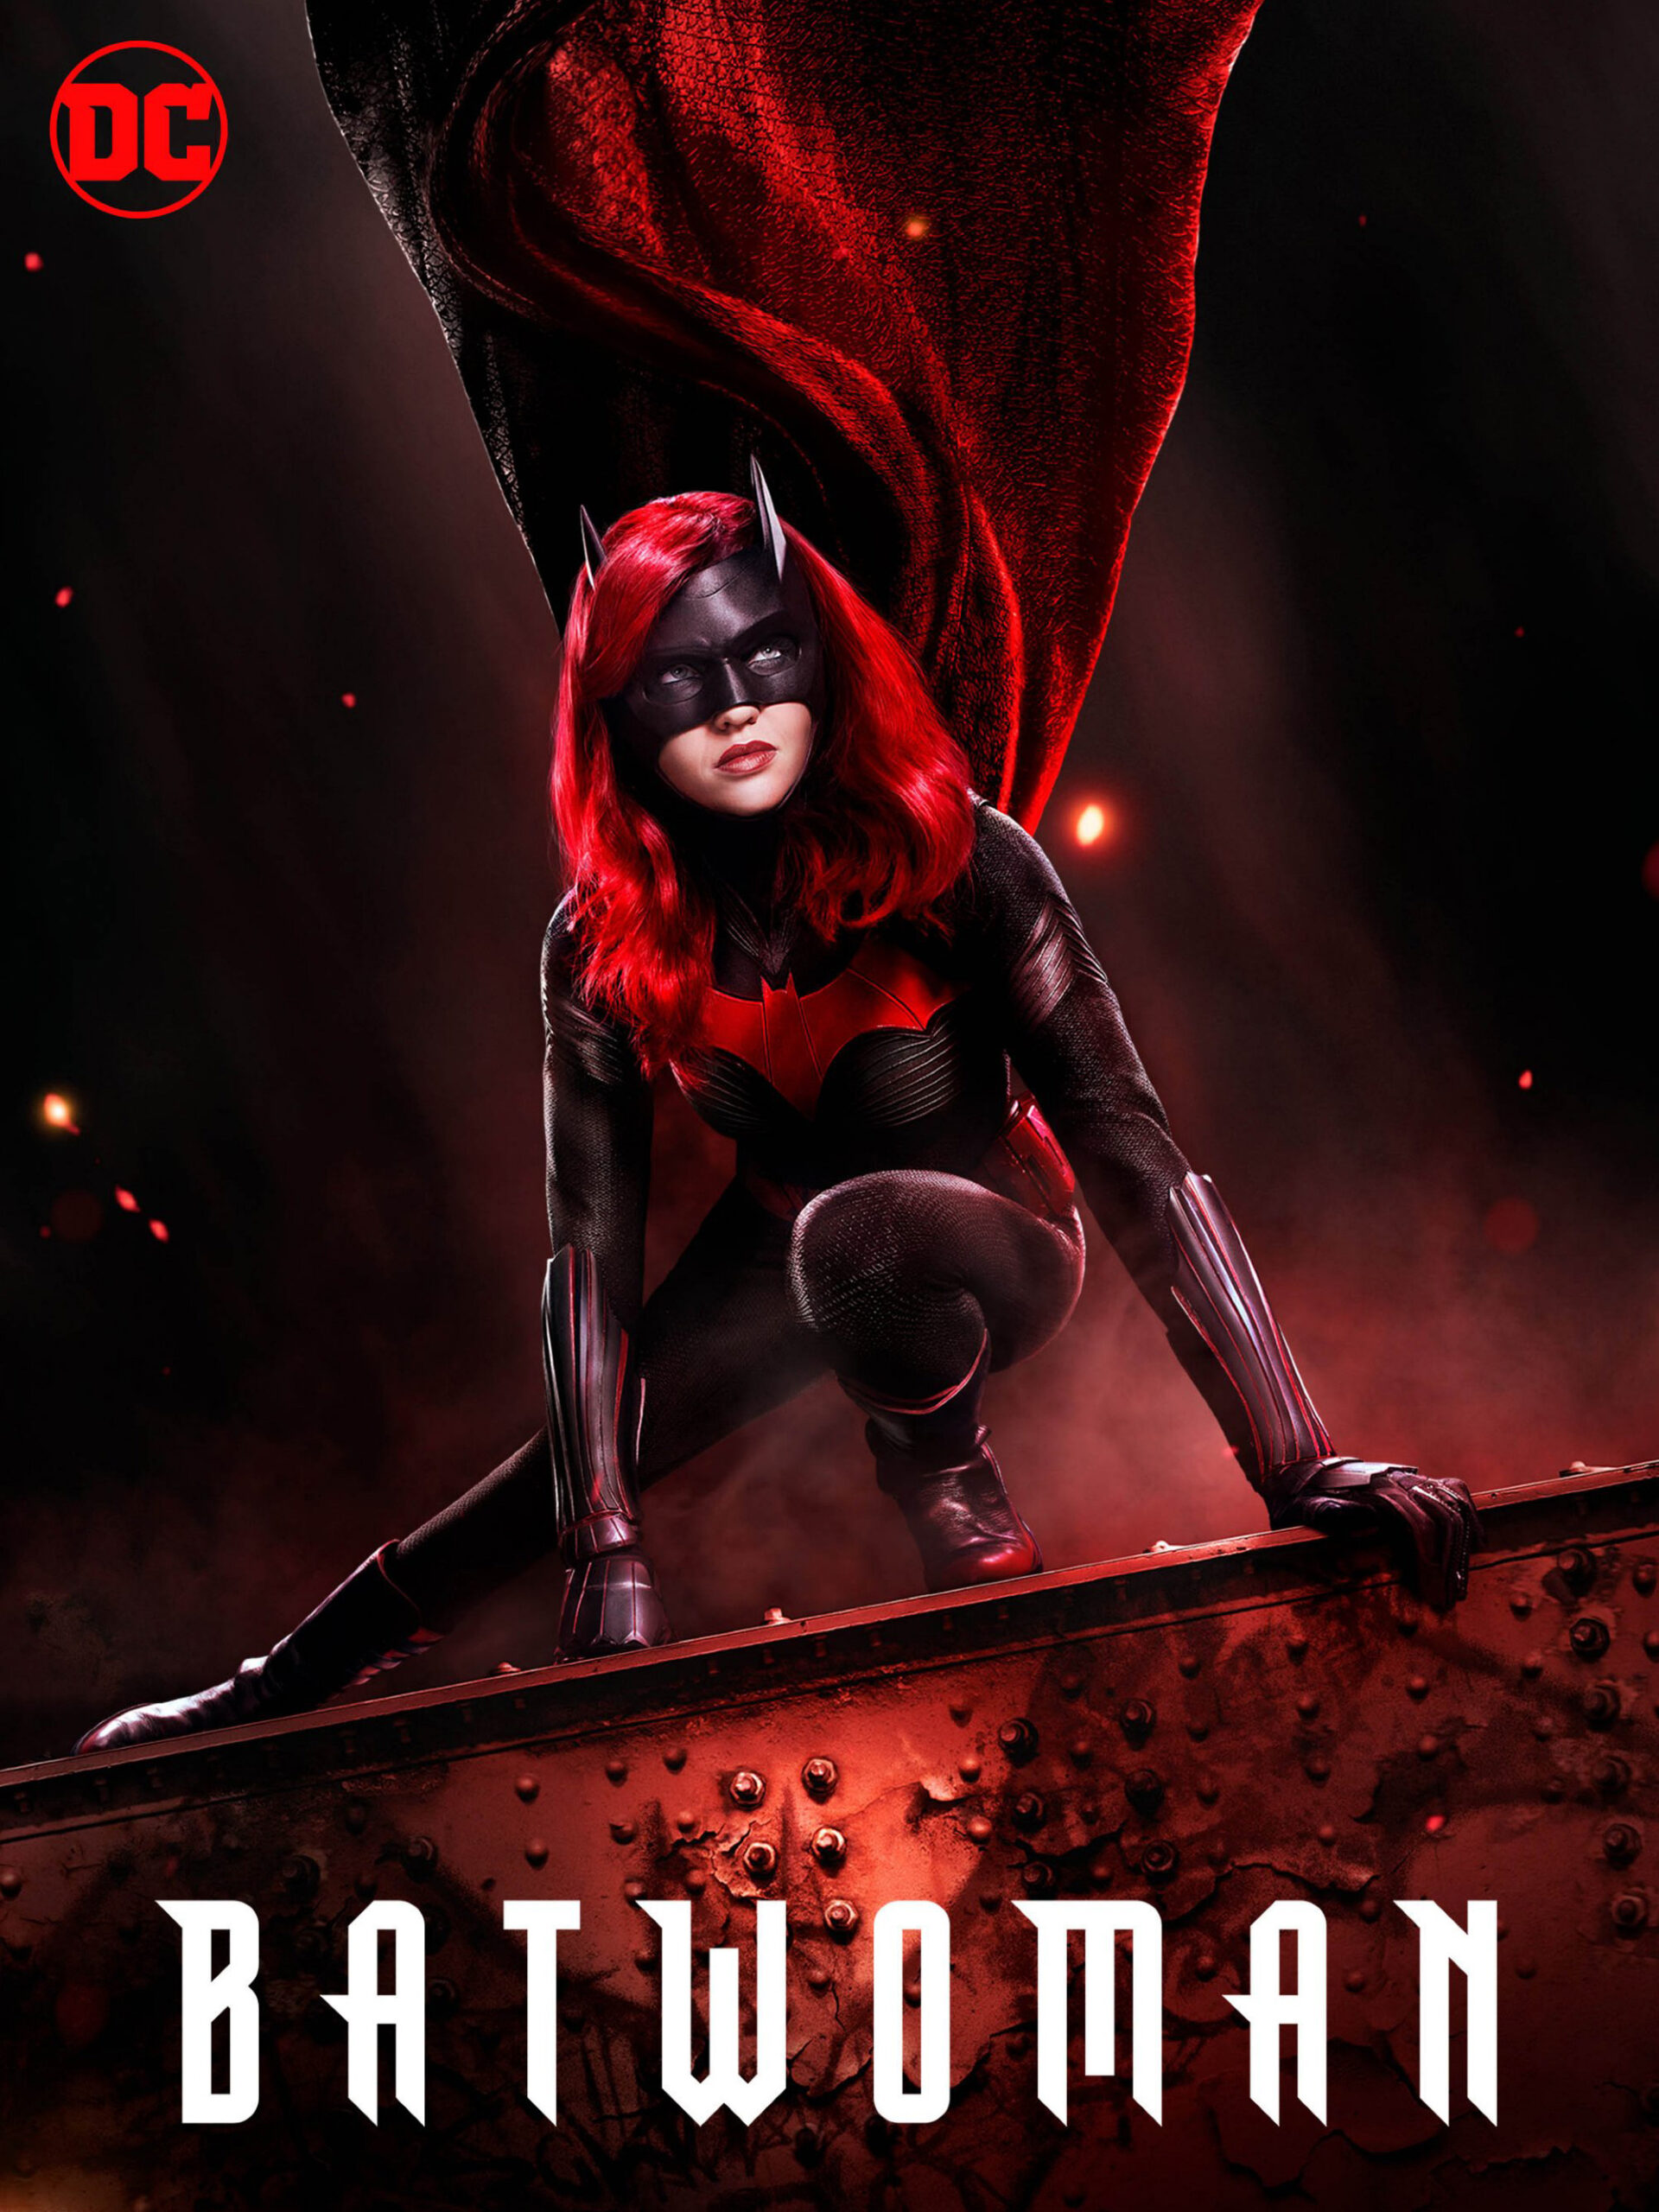 ดูหนังออนไลน์ฟรี Batwoman Season 1 (2019) EP.12 แบทวูแมน ซีซั่น 1 ตอนที่ 12 (Soundtrack)